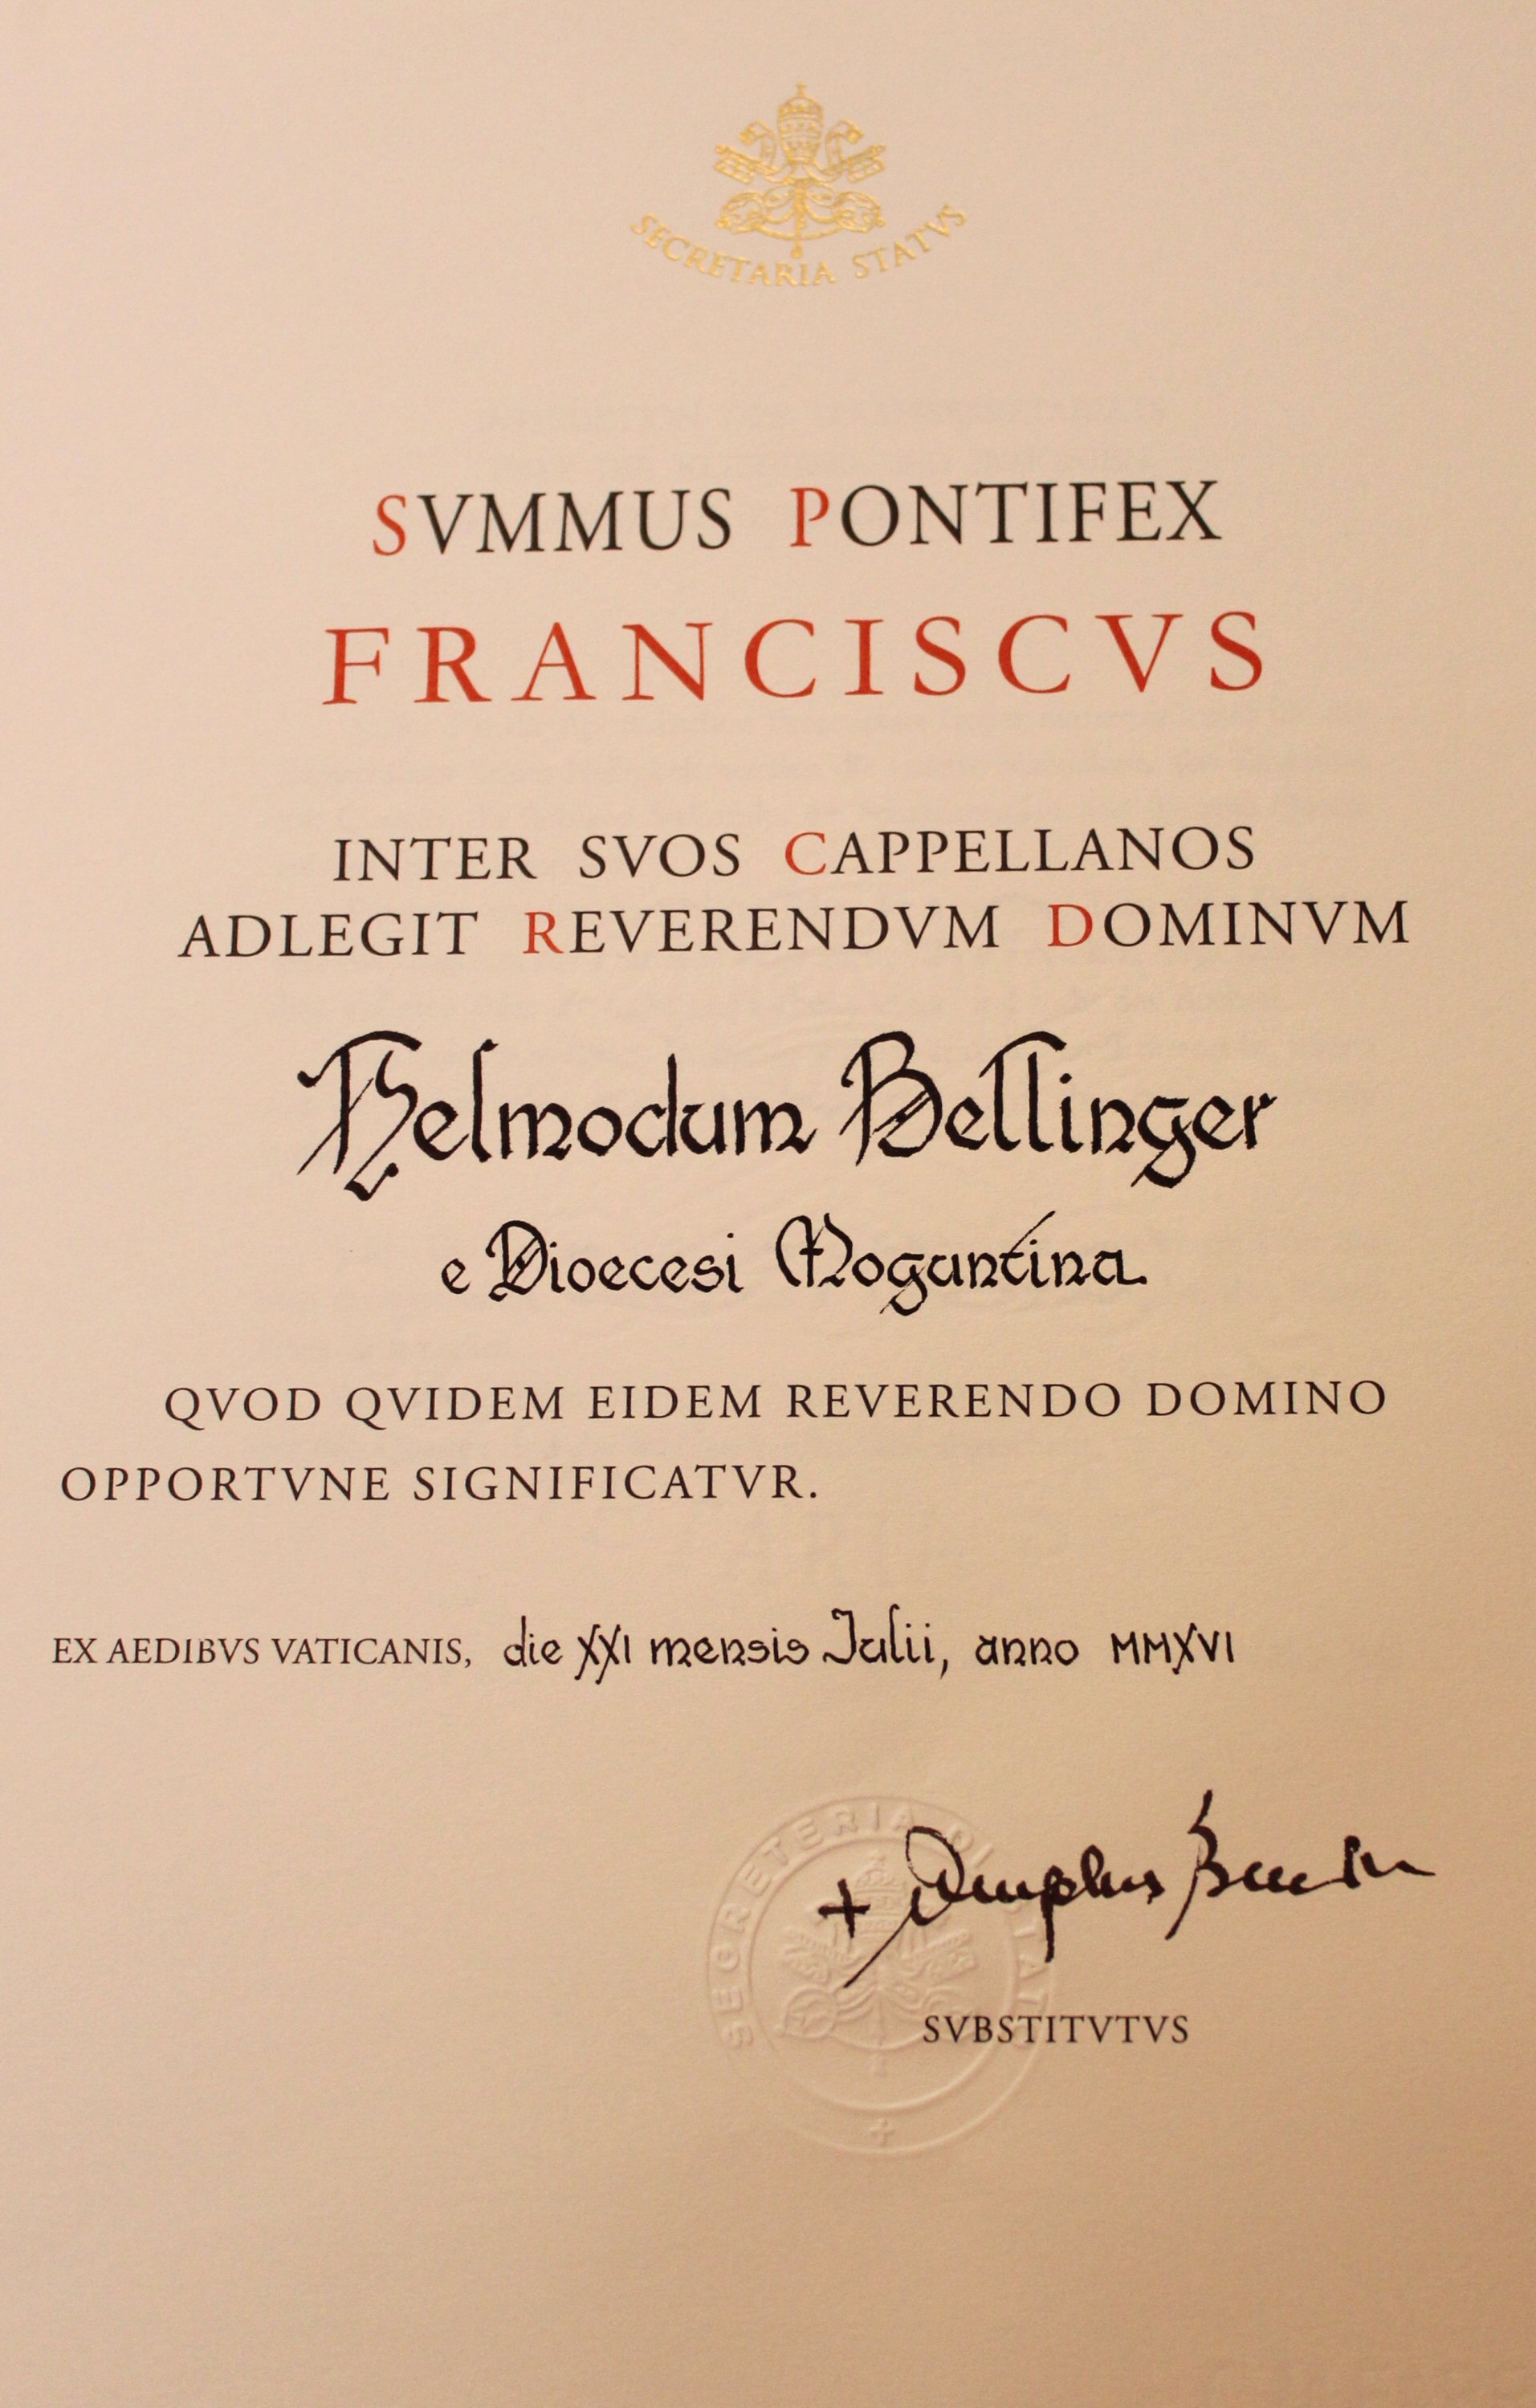 Bellinger Monsignore (c) Bistum Mainz / Matschak